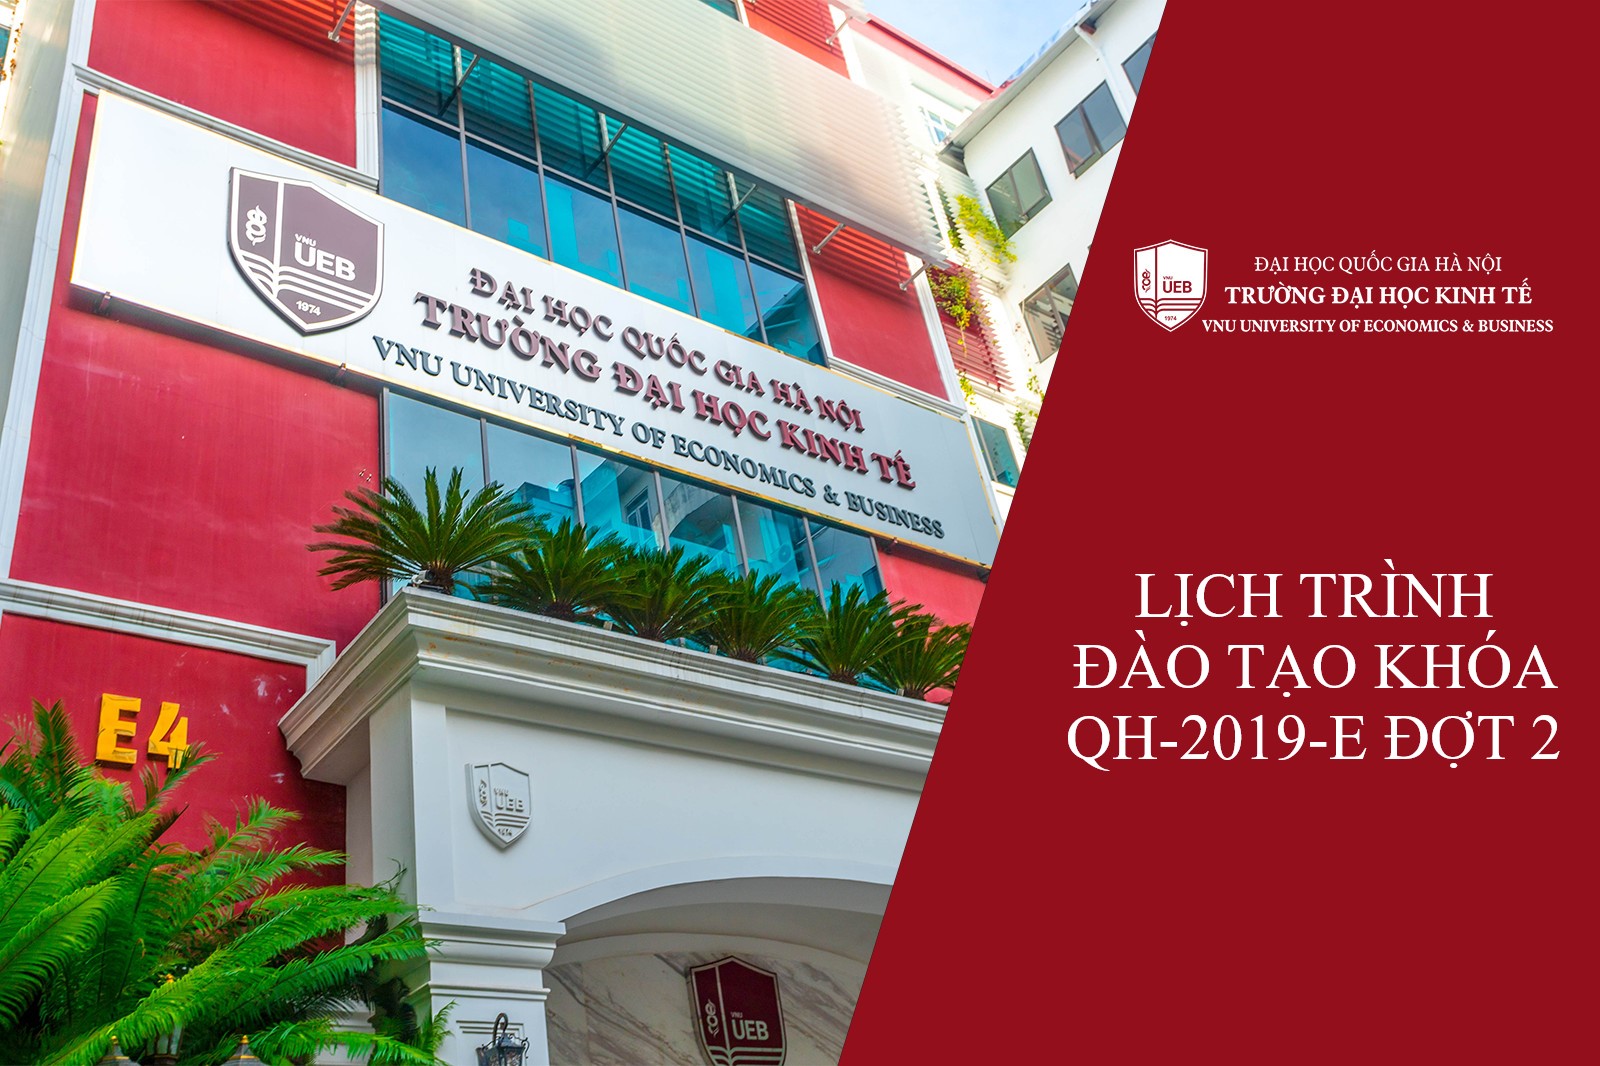 Trường Đại học Kinh tế thông báo Lịch trình đào tạo khóa QH-2019-E trúng tuyển đợt 2